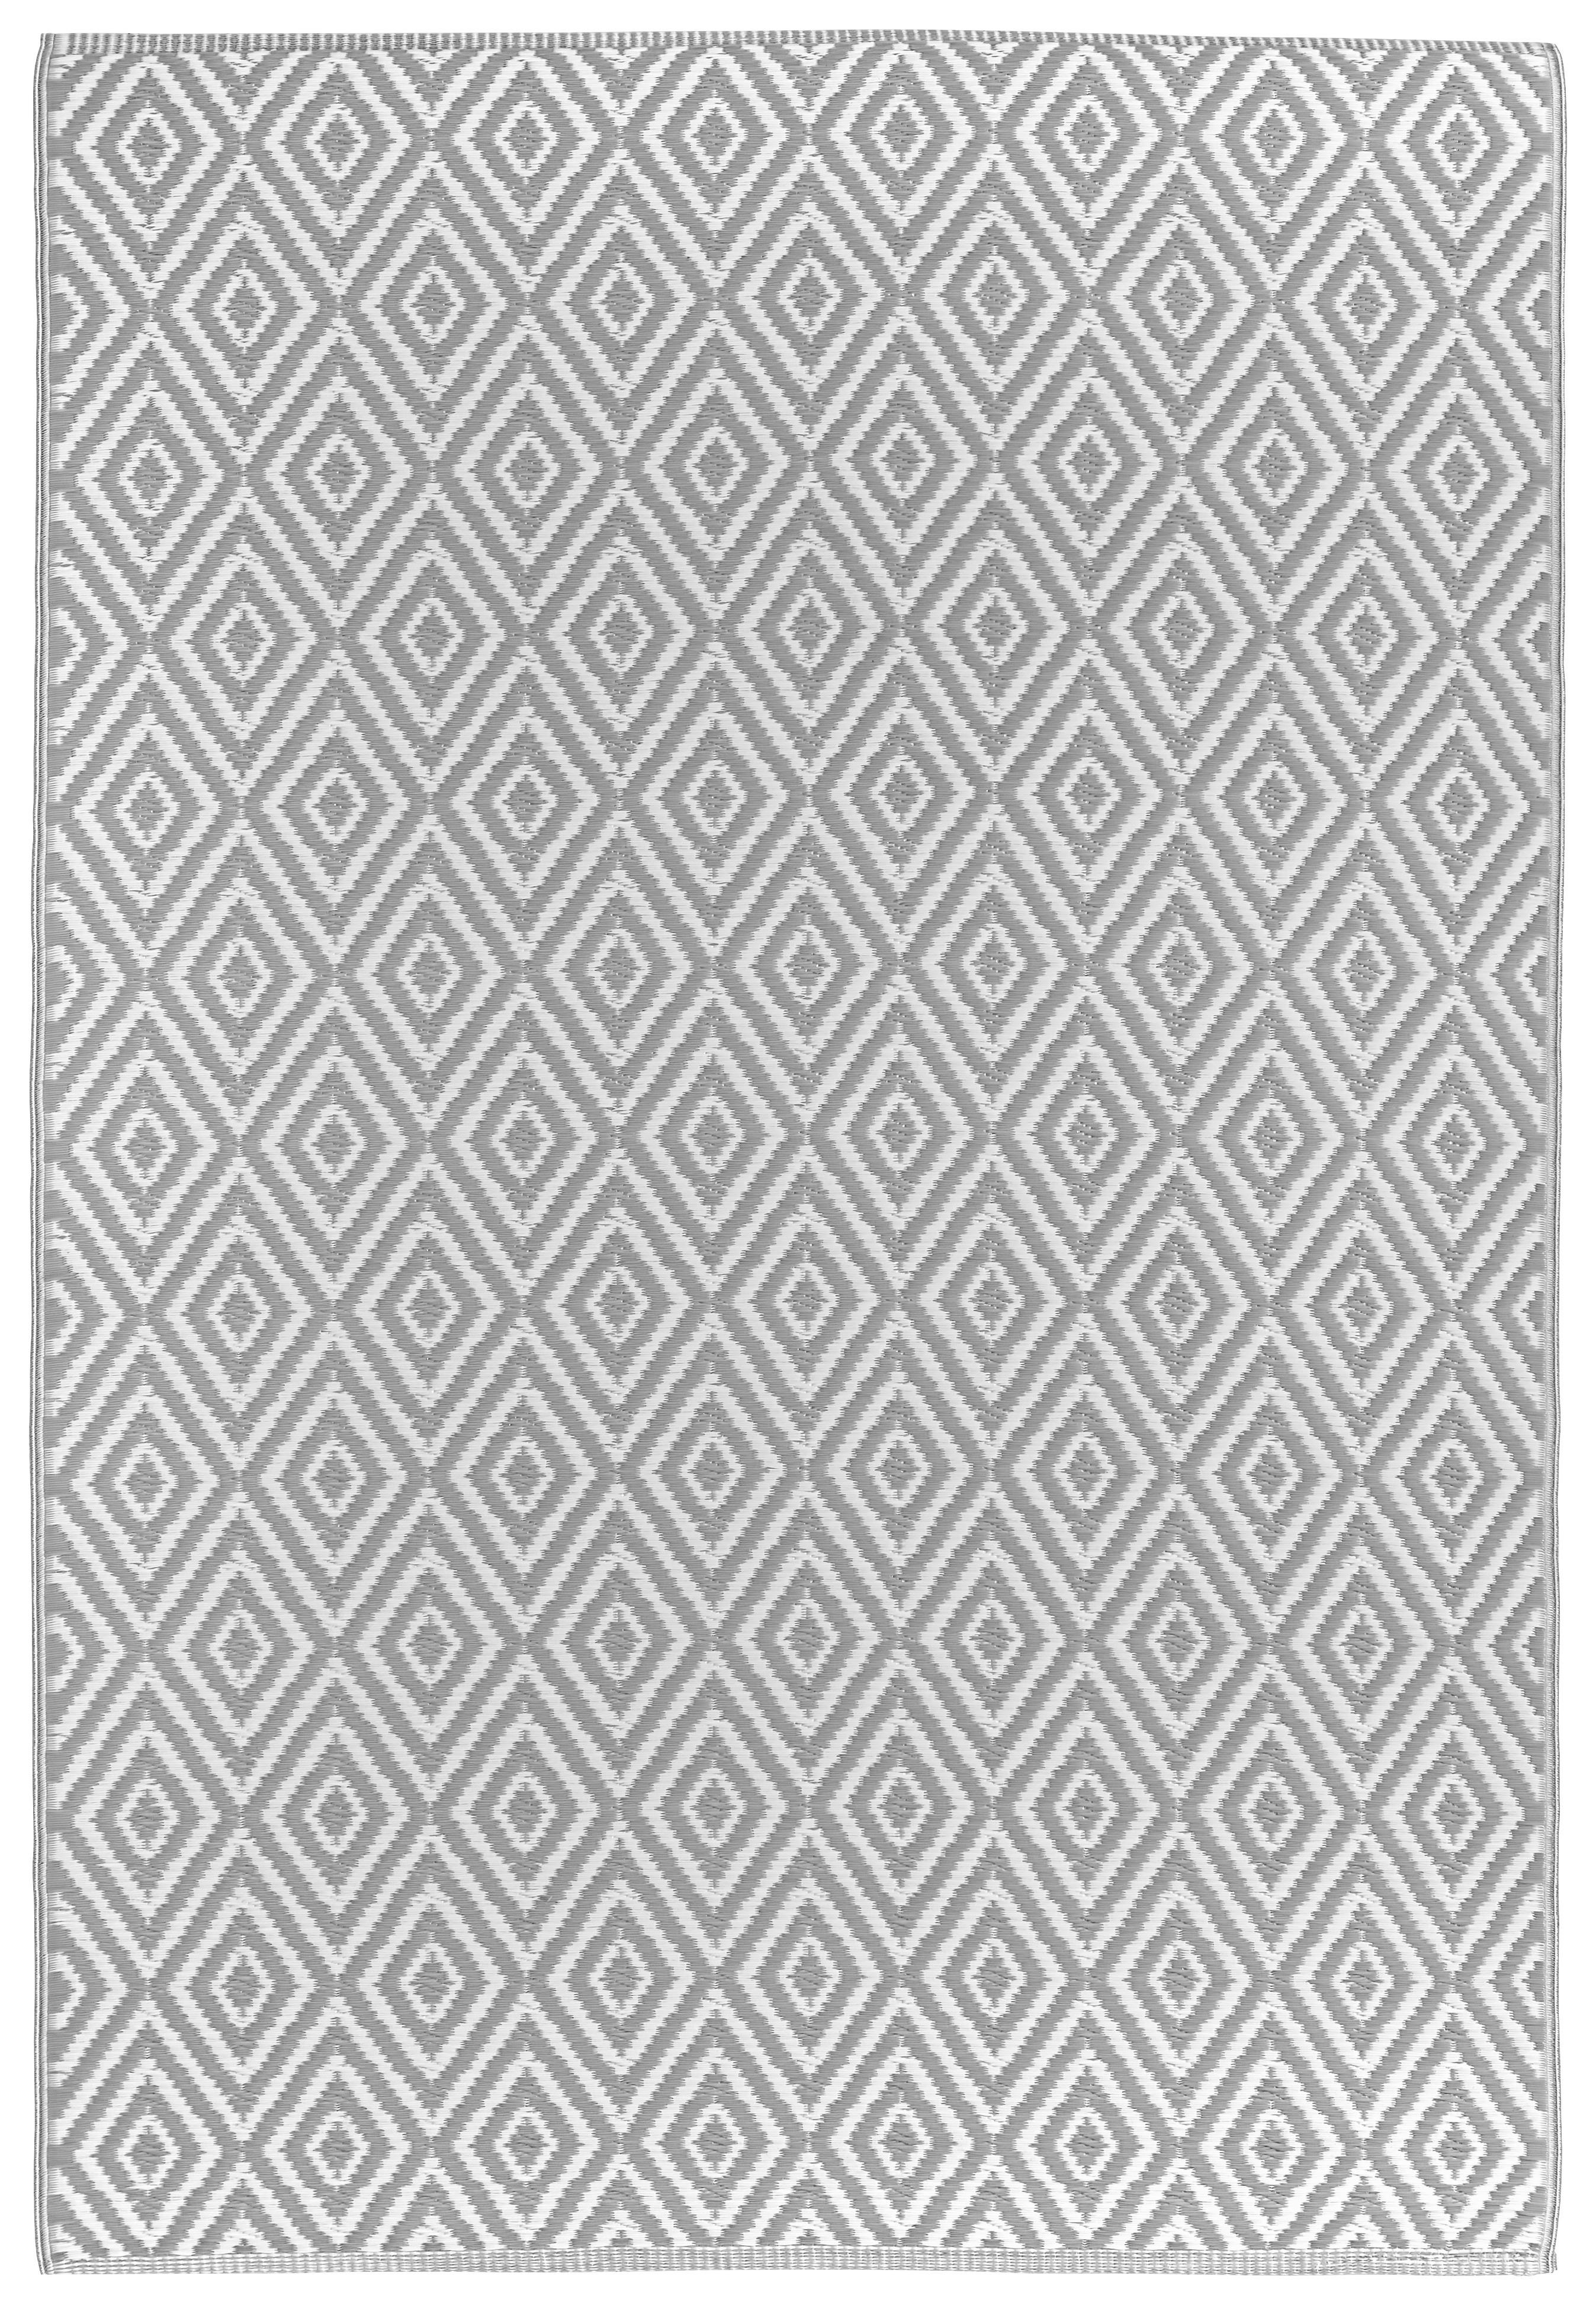 OUTDOORTEPPICH  In-/ Outdoor 90/150 cm  Grau, Weiß   - Weiß/Grau, Trend, Textil (90/150cm) - Boxxx